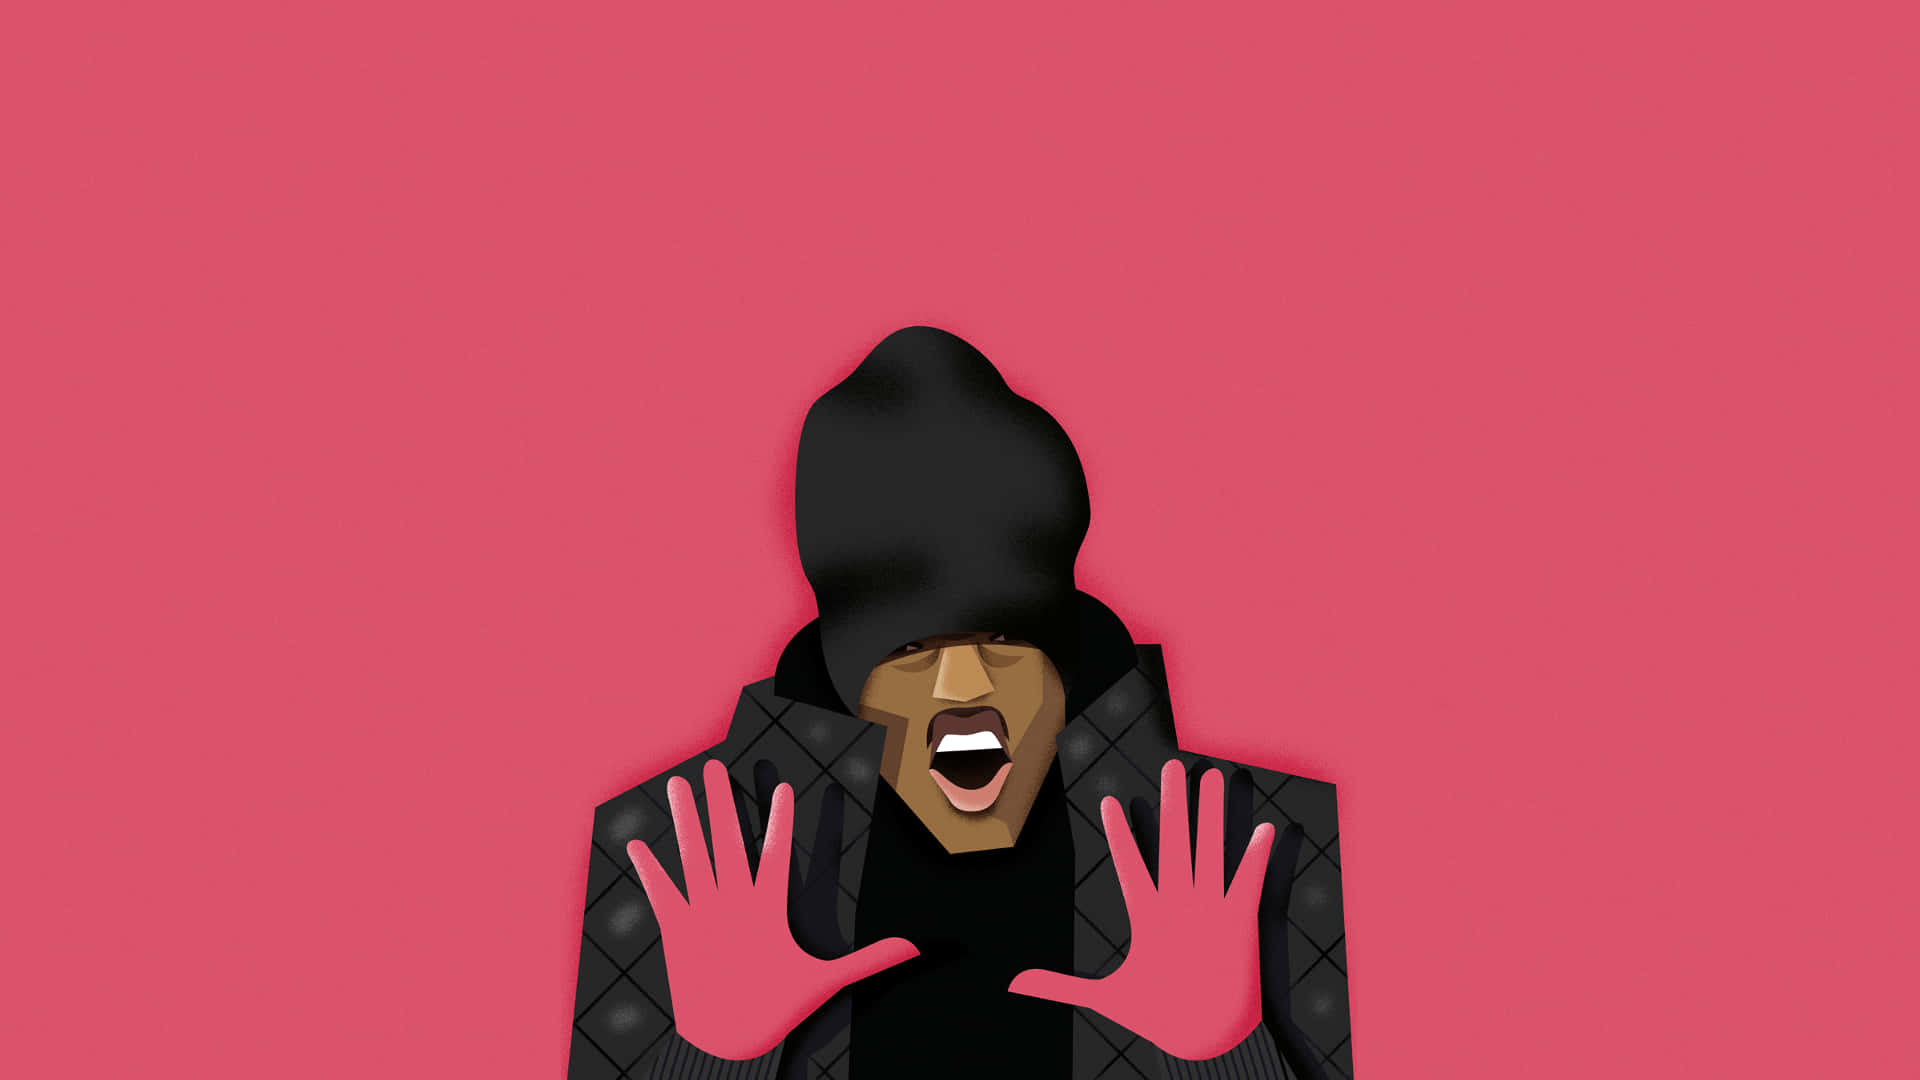 Werfensie Einen Blick Auf Den Hip-hop-künstler Dababy Als Cartoon Auf Ihrem Computer Oder Handy-hintergrund! Wallpaper